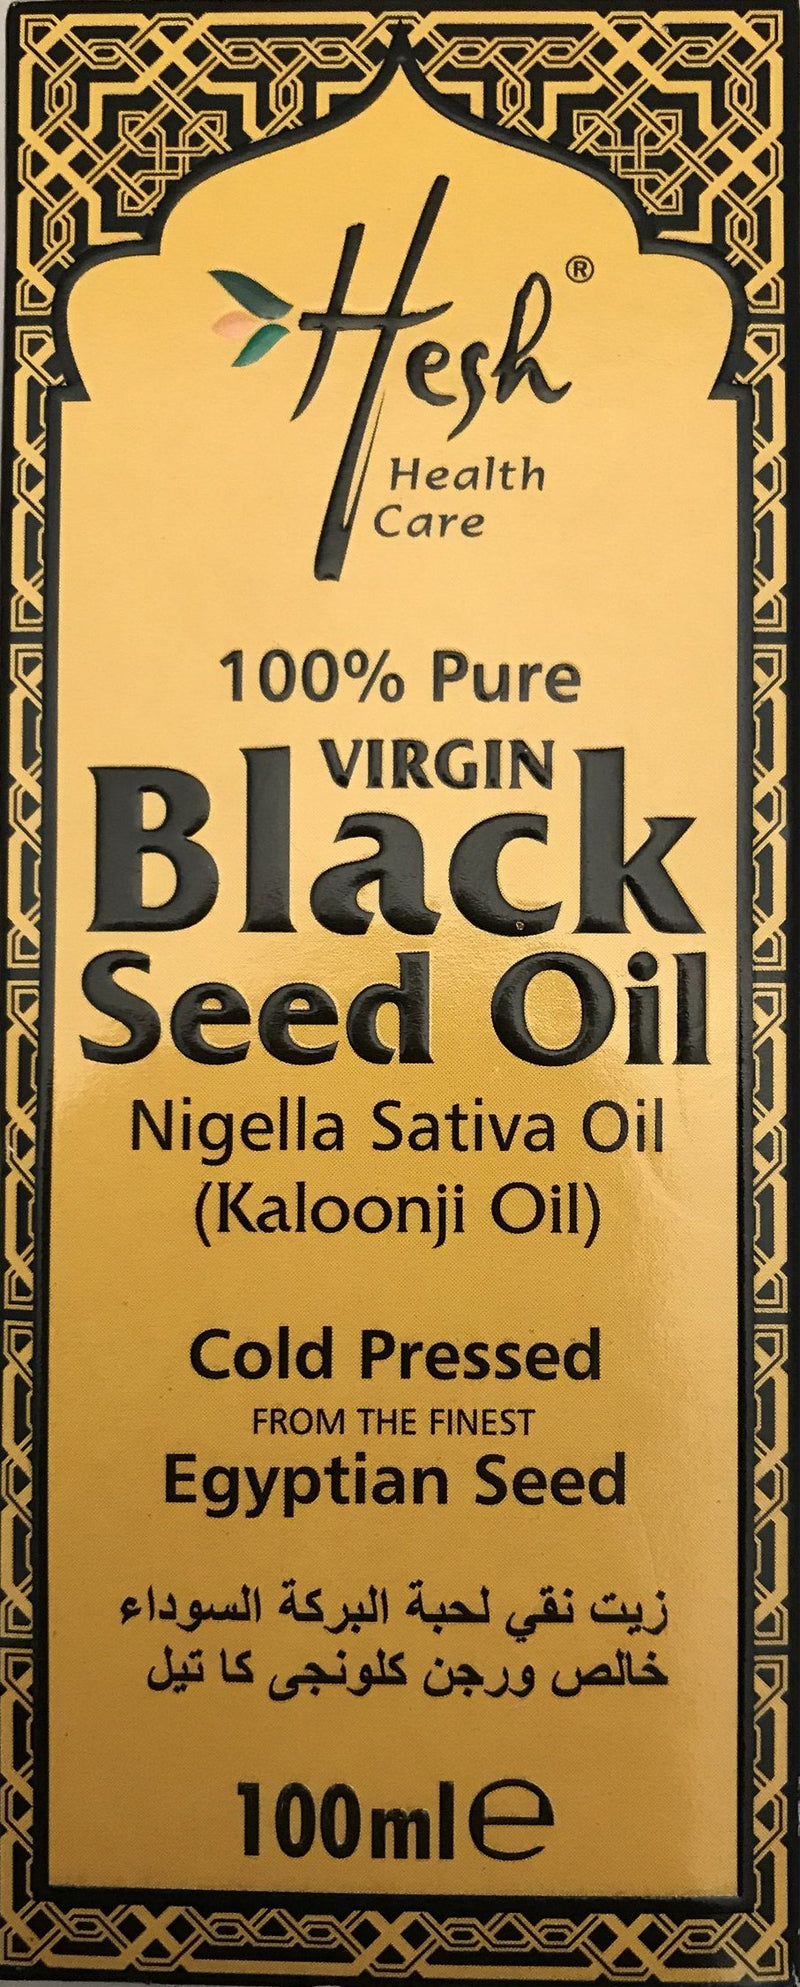 Hesh 100% Virgin Black Seed Oil  - 100ml - ExoticEstore